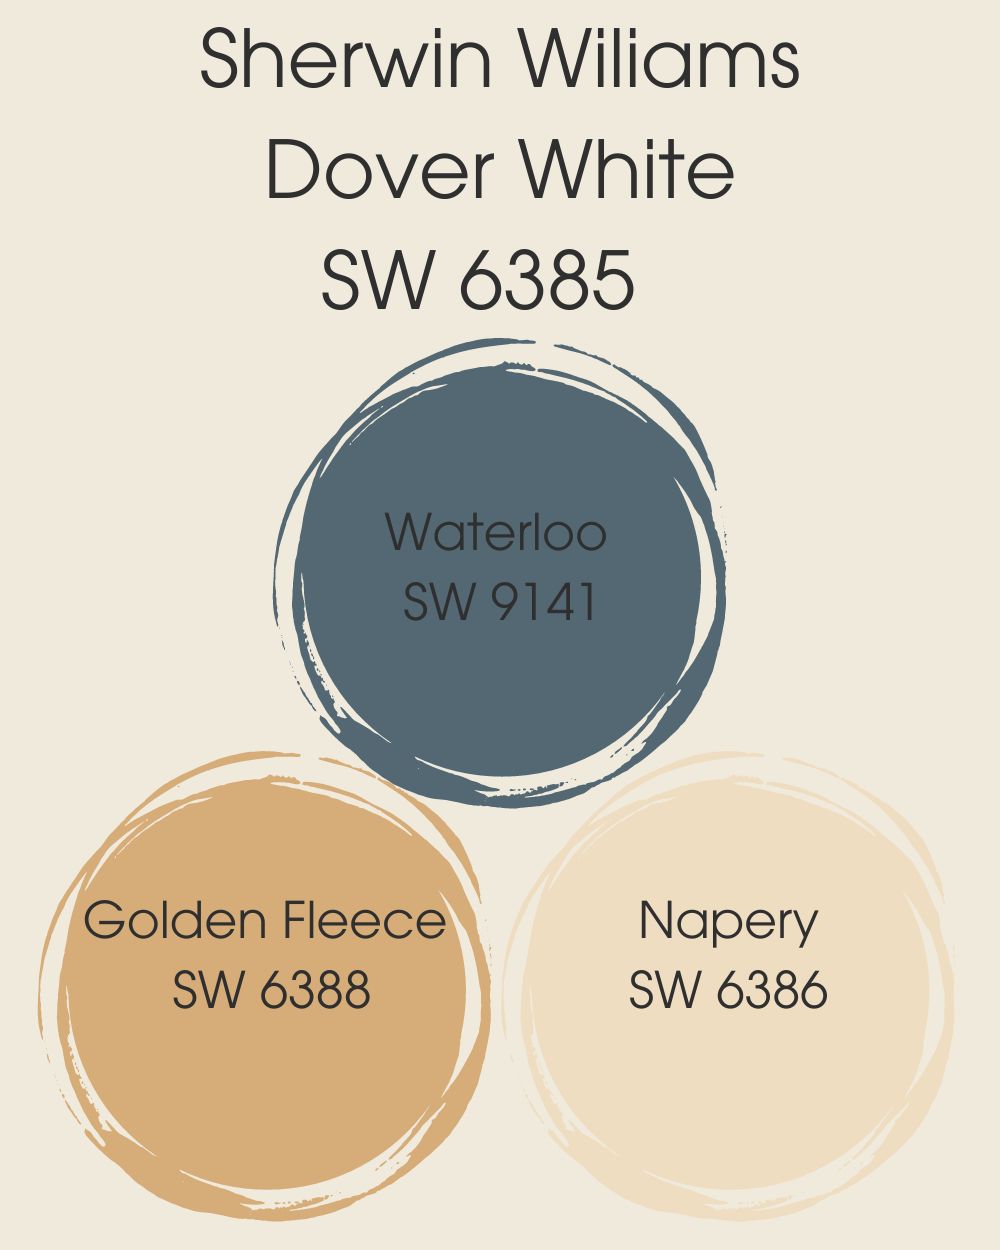 Sherwin Wiliams Dover White SW 6385 